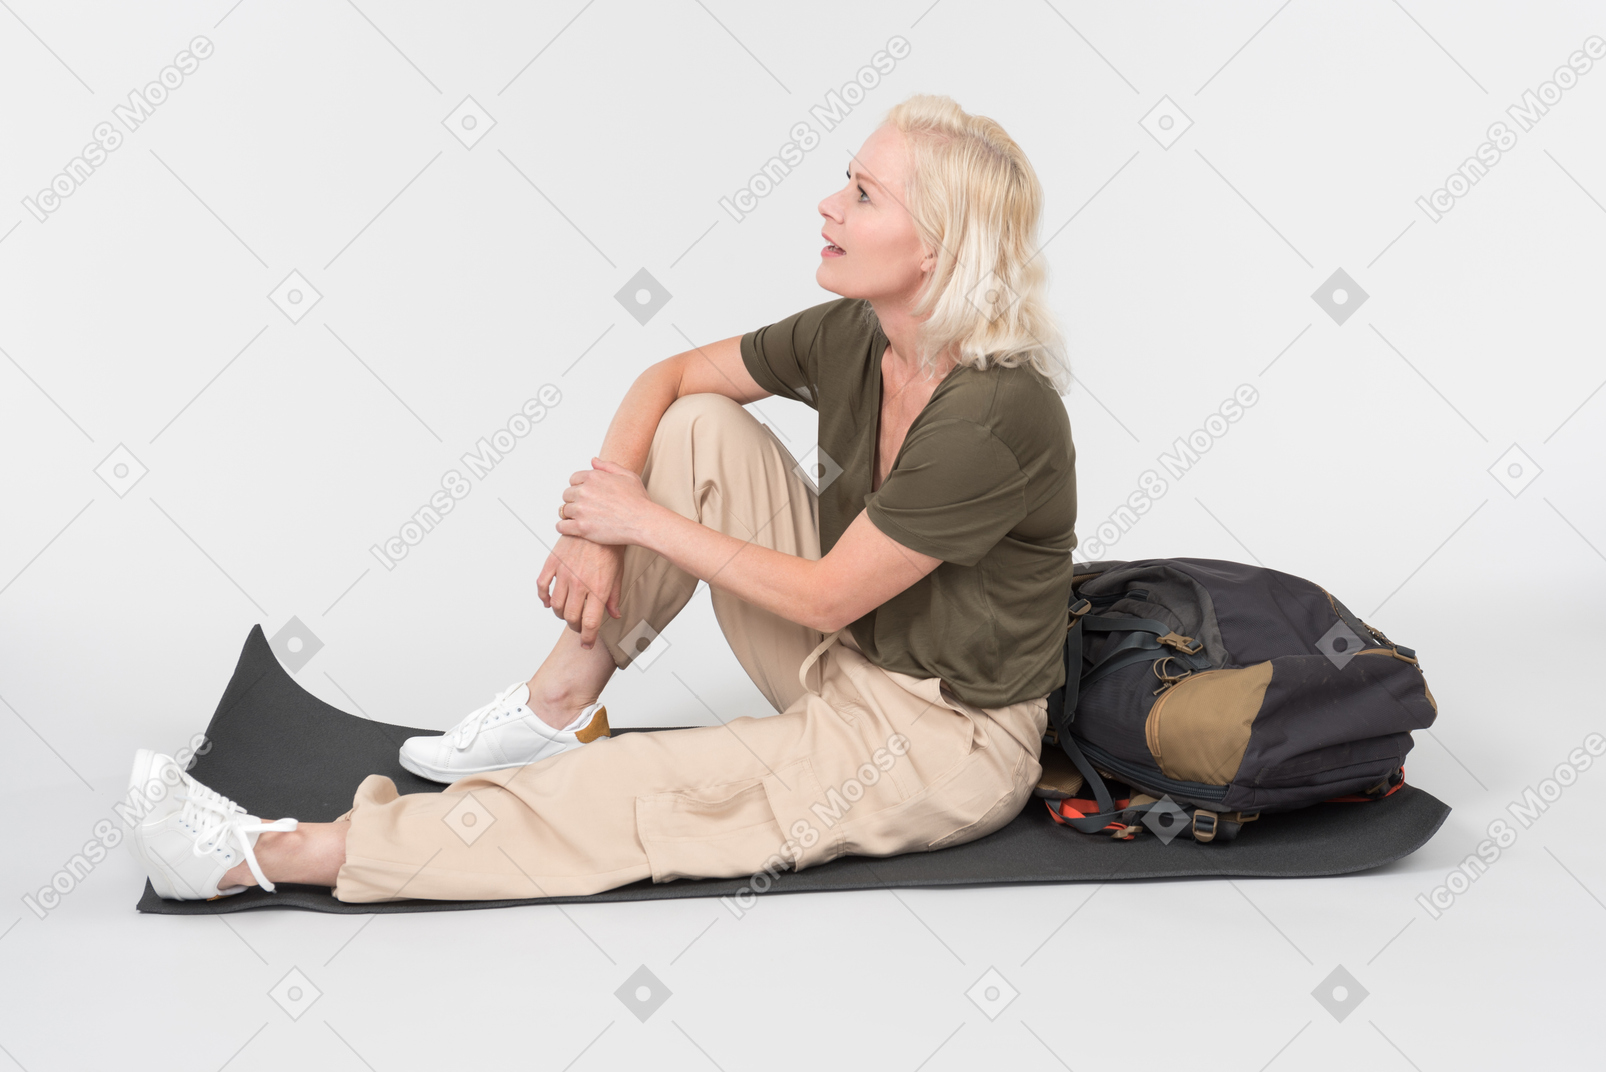 성숙한 여성 관광객 관광 배낭 근처 관광 매트에 앉아